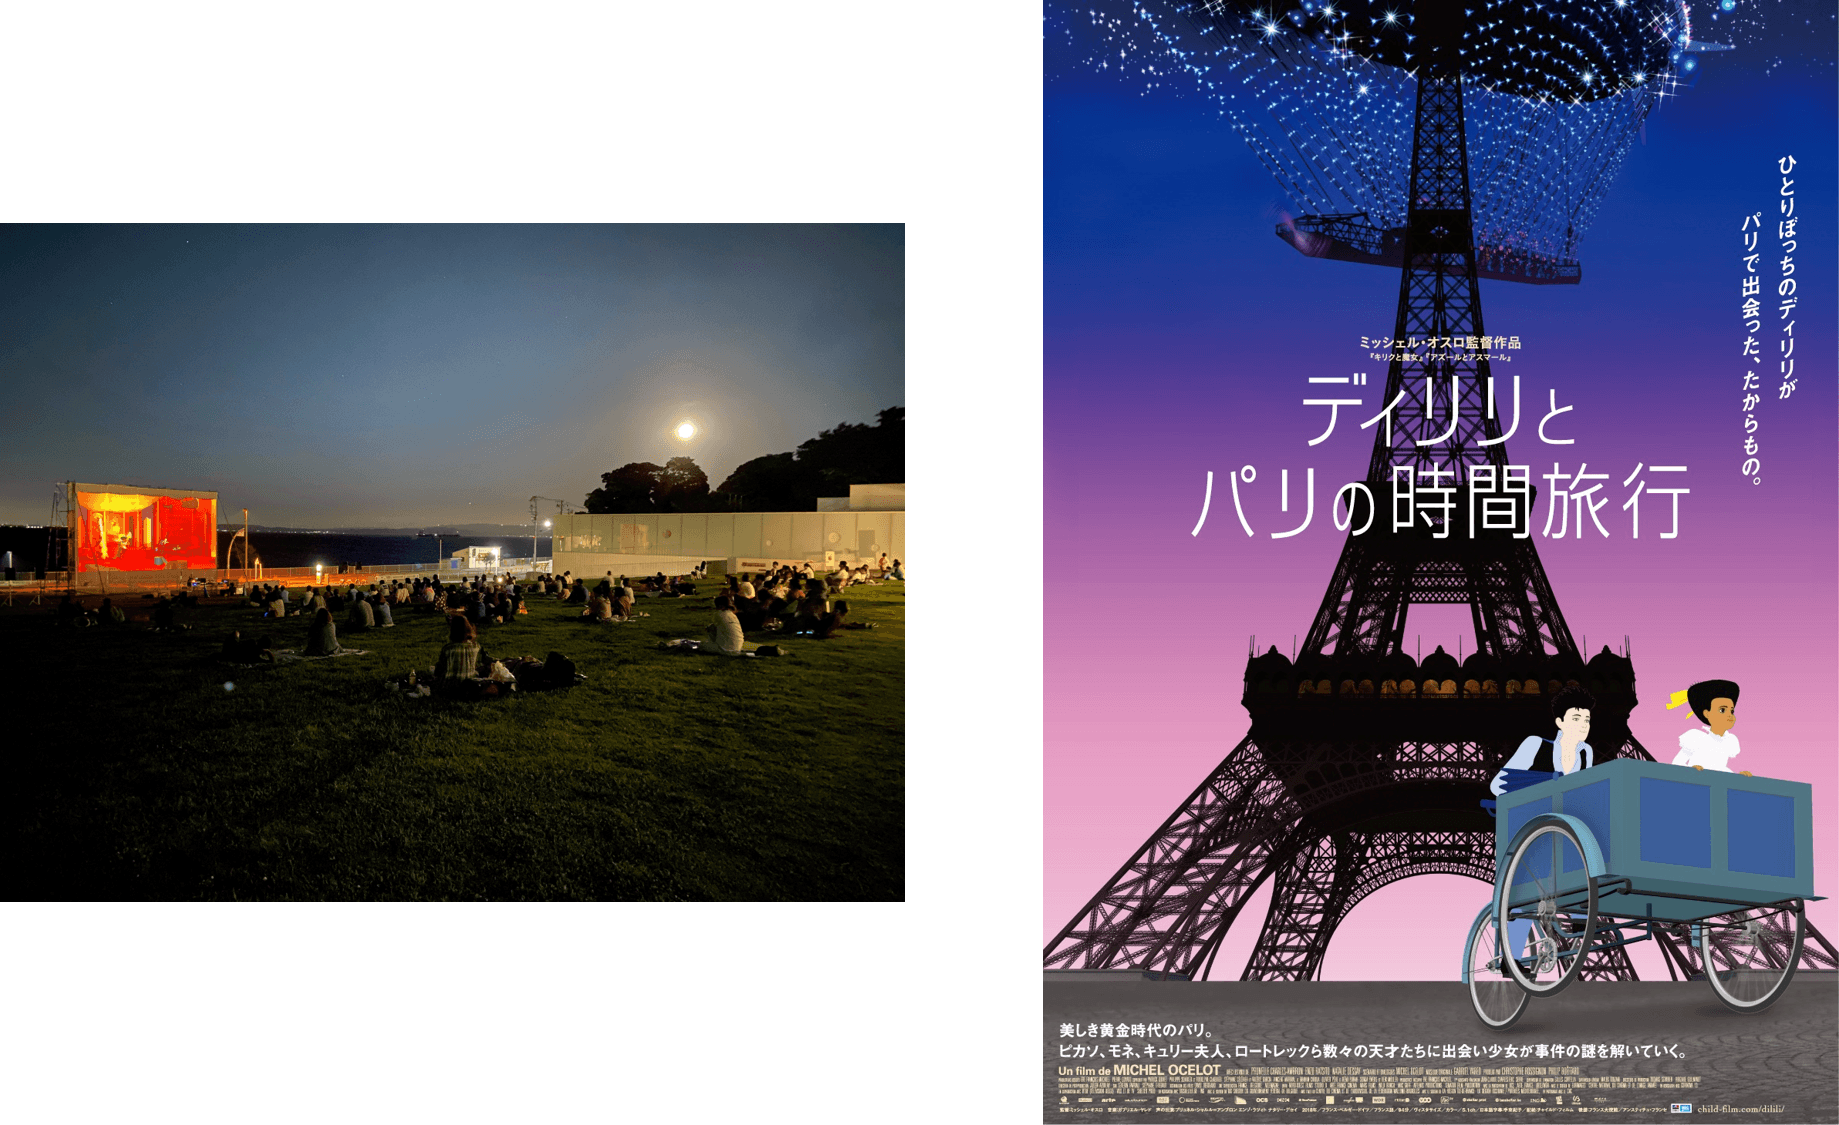 海の広場に巨大スクリーンが出現、横須賀美術館が野外映画館に！「夏の野外シネマパーティー」を開催します